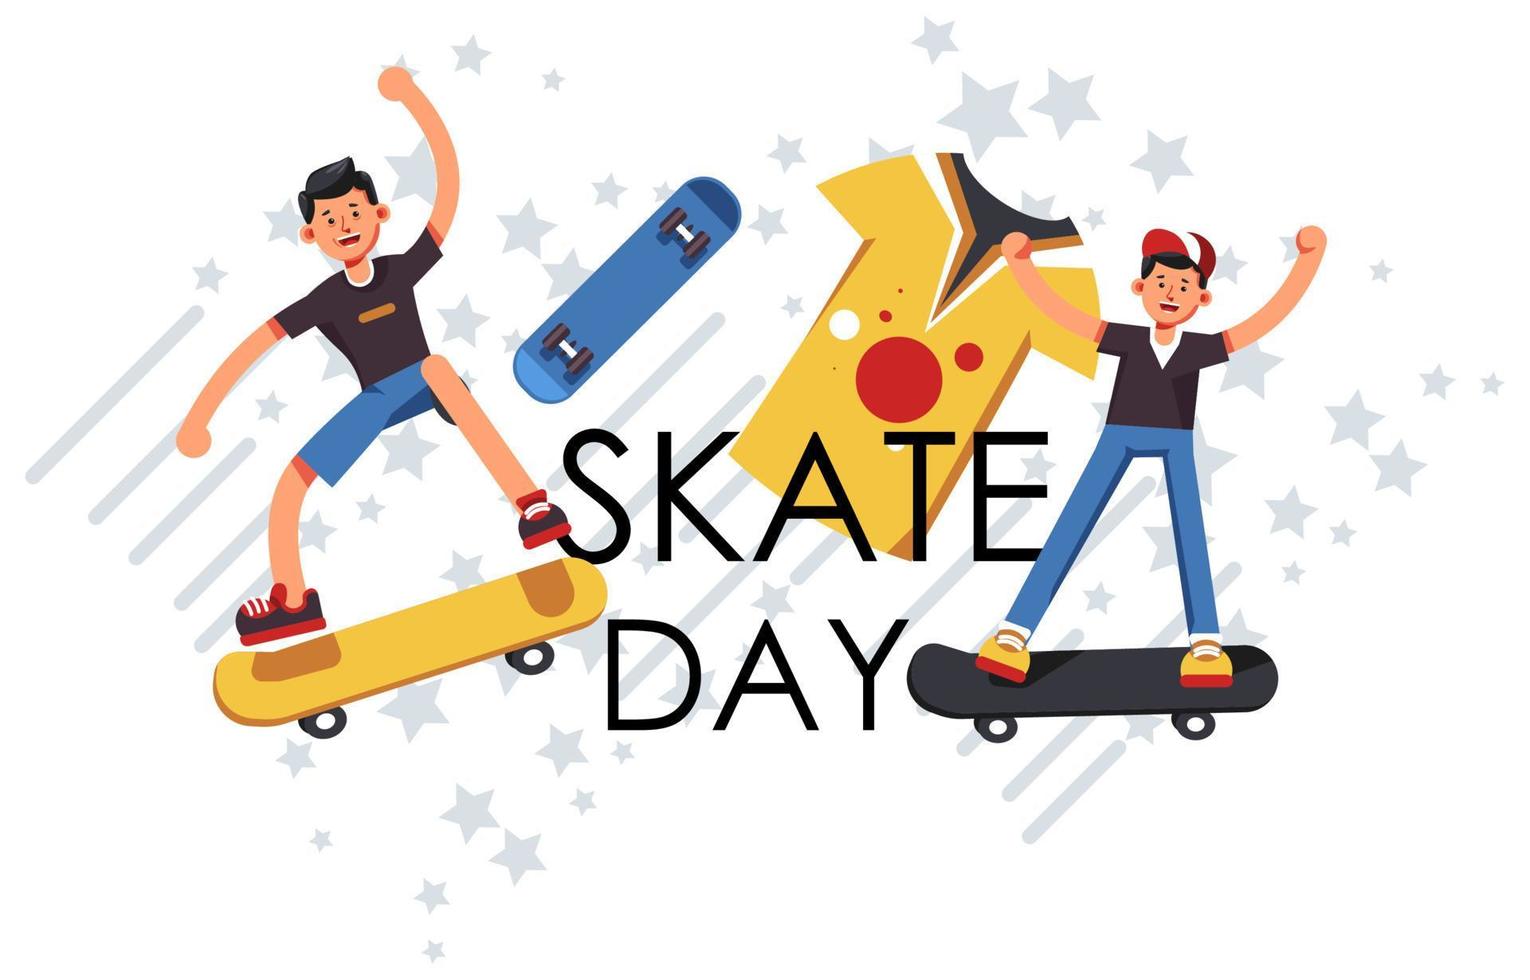 jour de skate, adolescents sur des planches portant un vecteur uniforme